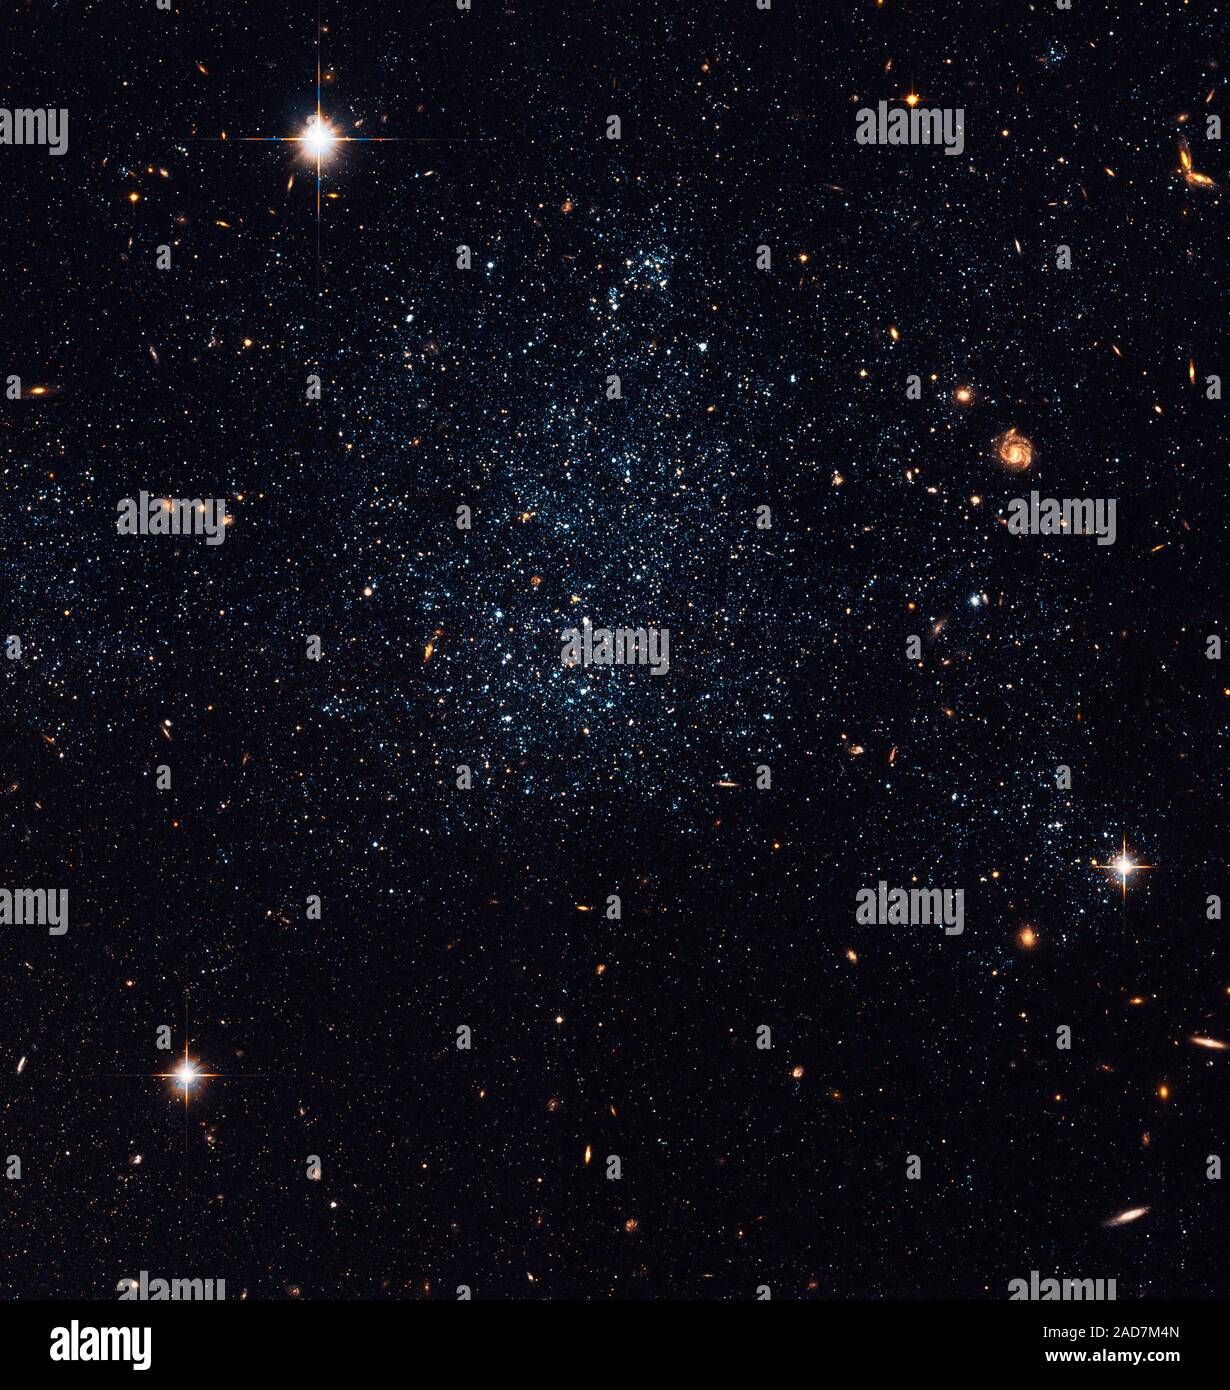 Esta colección suelta de estrellas es en realidad una galaxia irregular enana, llamada Holmberg IX. Se encuentra justo en el borde exterior de la M81, una gran galaxia espiral en Ursa Major. Esta imagen fue tomada con la cámara avanzada del Hubble para encuestas a principios de 2006. Holmberg IX es el llamado tipo de Magallanes galaxia, como su tamaño y la irregularidad en la estructura son similares a la pequeña Nube de Magallanes, un vecino de nuestra propia Vía Láctea. Holmberg IX primero fue descubierto por el astrónomo Sidney Van den Bergh en 1959, y catalogado como DDO 66. La galaxia recibió su denominación "Holmberg IX" cuando se debatió en Eric Foto de stock